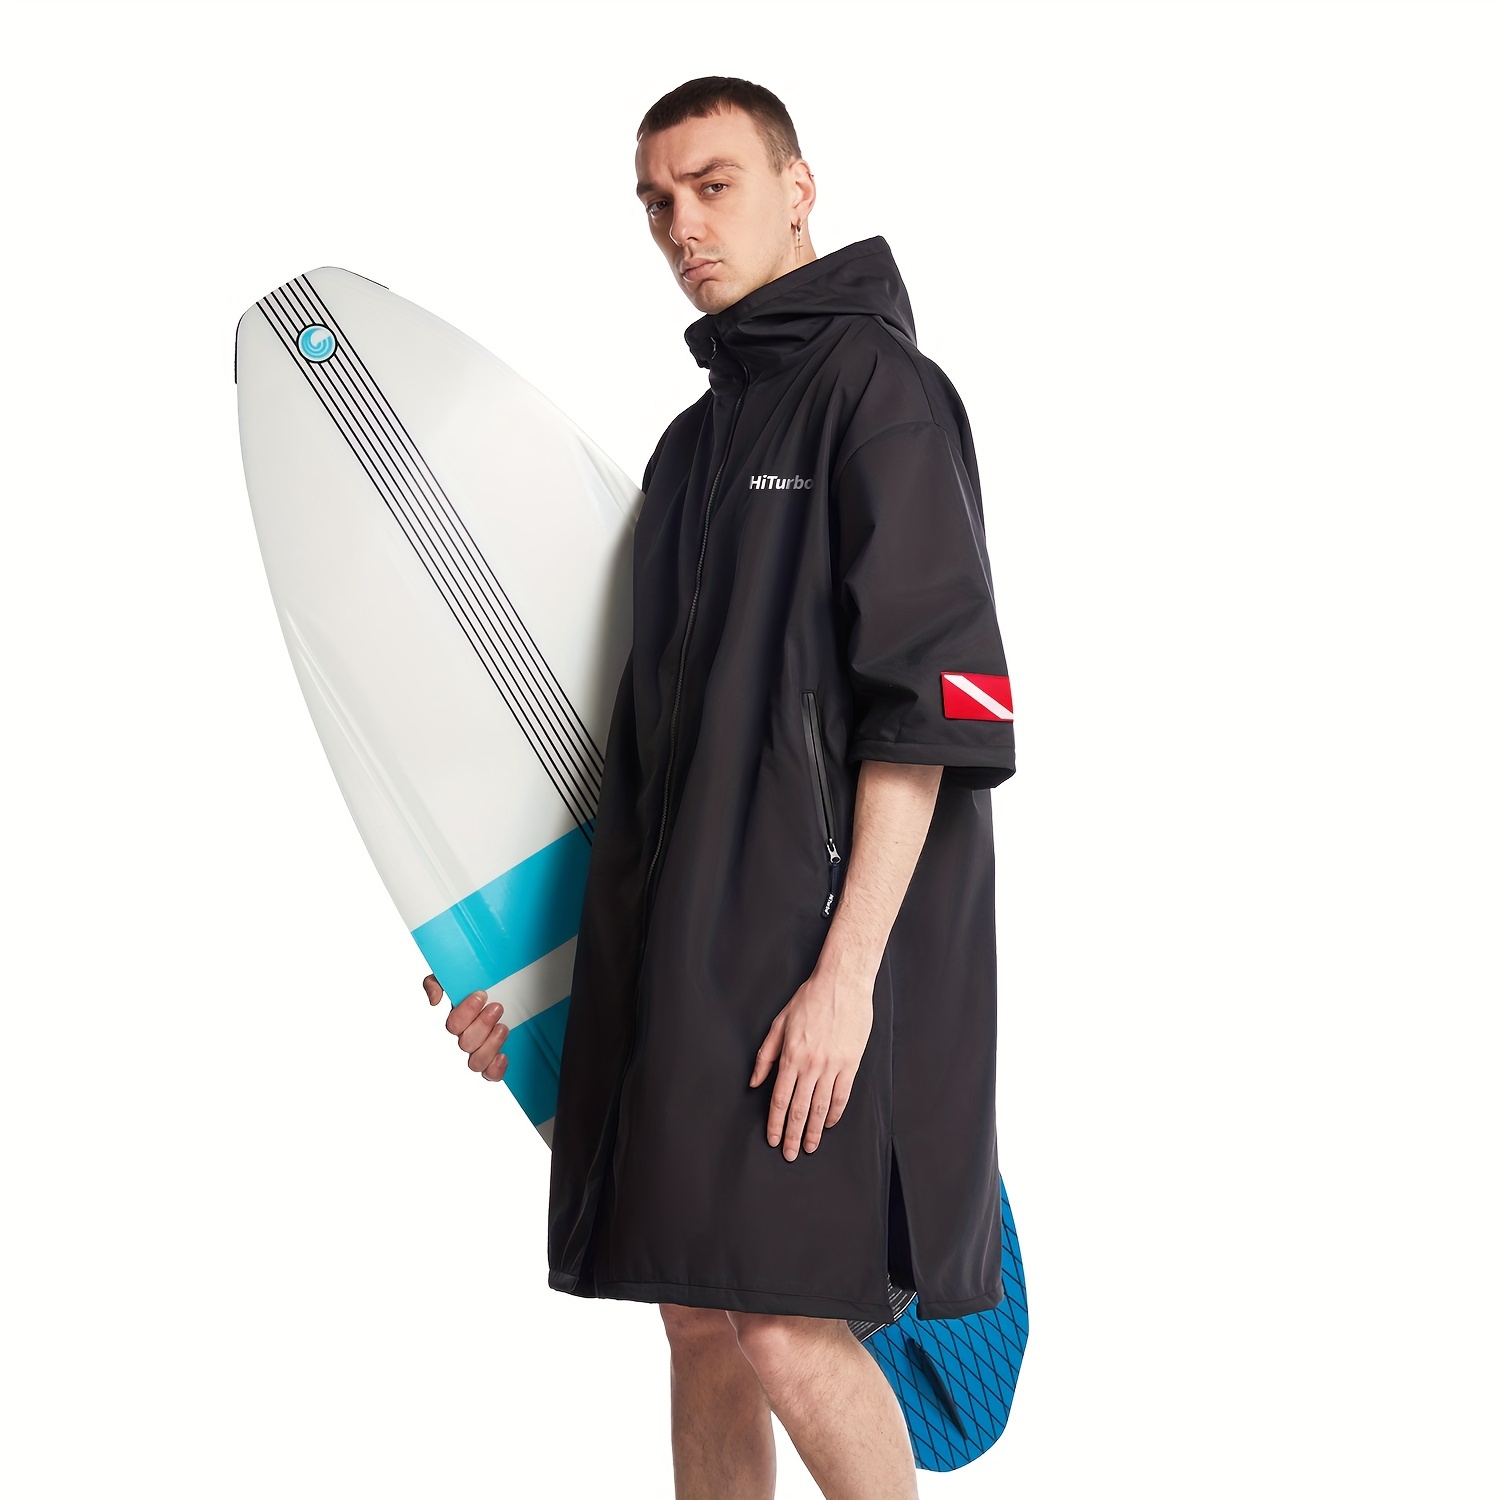 Ponchos de surf, la comodidad con estilo - Surfeamos